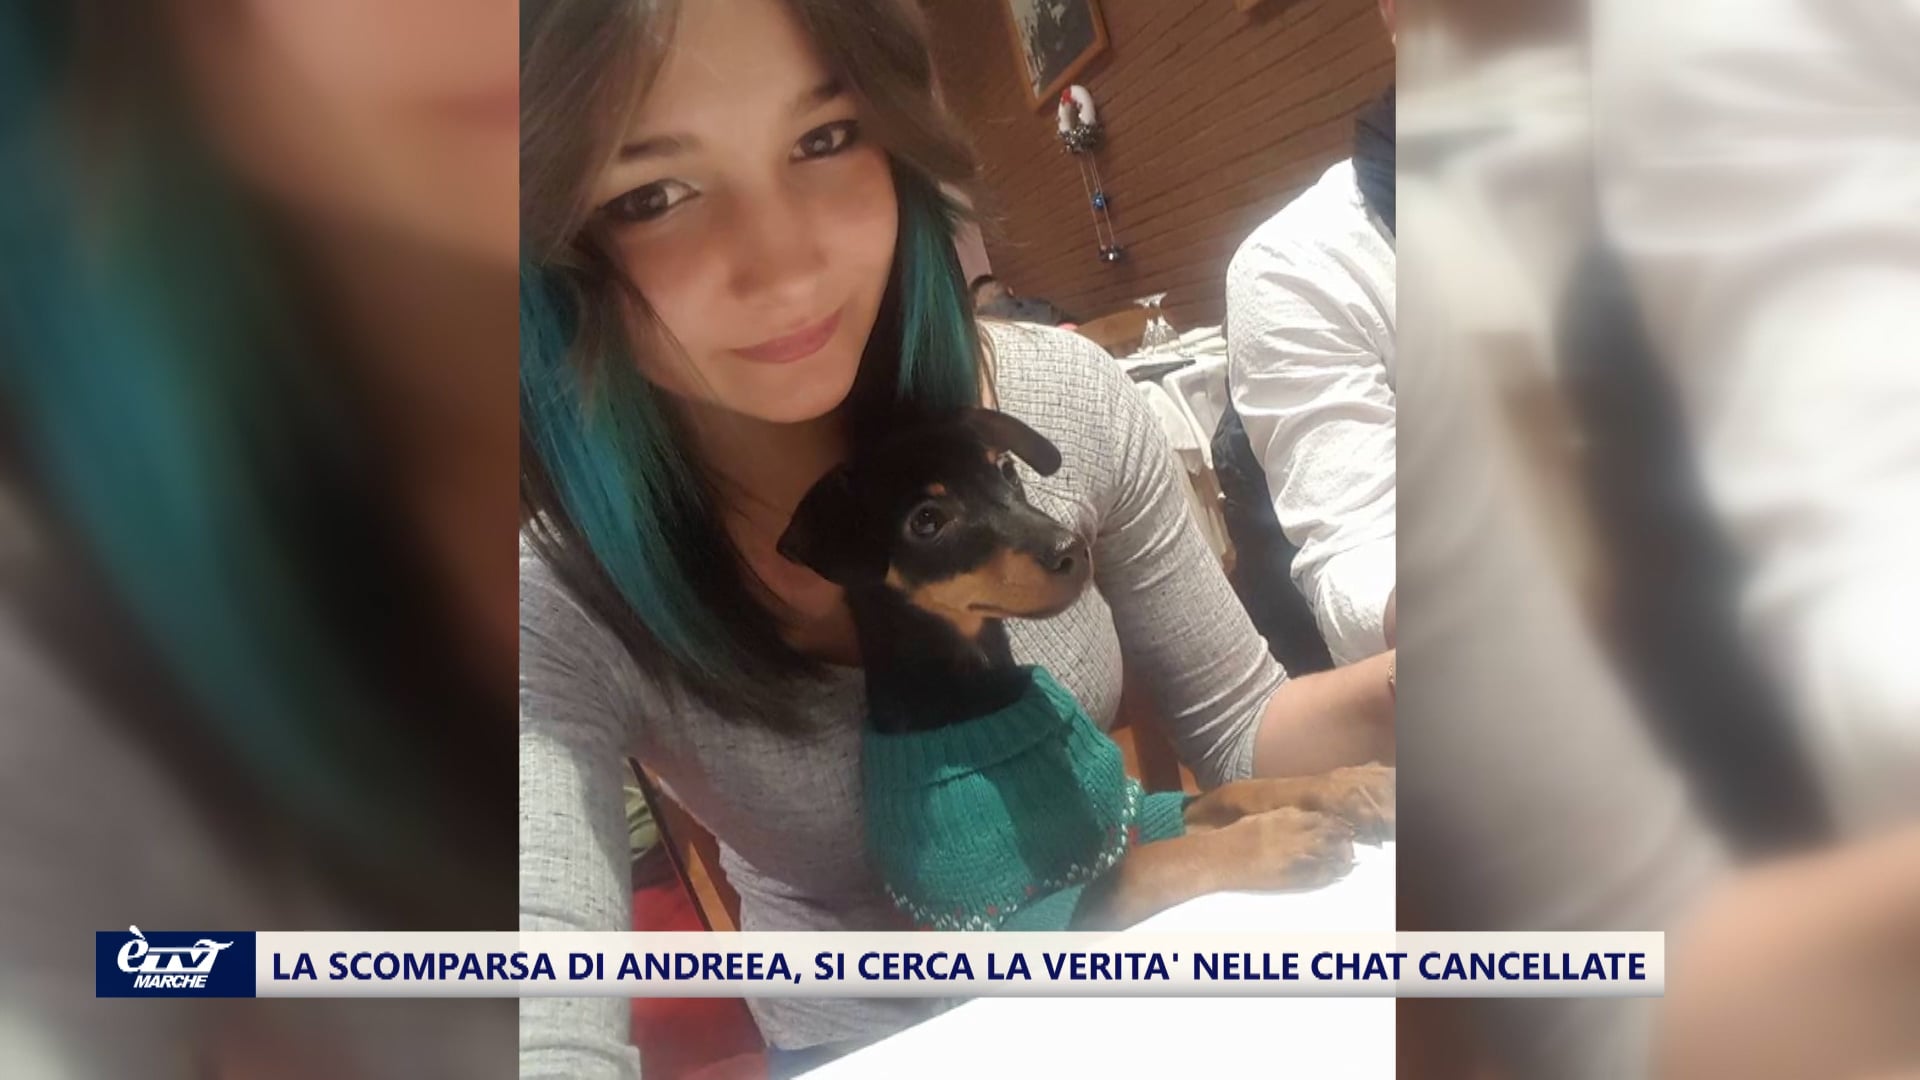 La scomparsa di Andreea, si cerca la verità sulla sua scomparsa nelle chat cancellate dal telefono - VIDEO